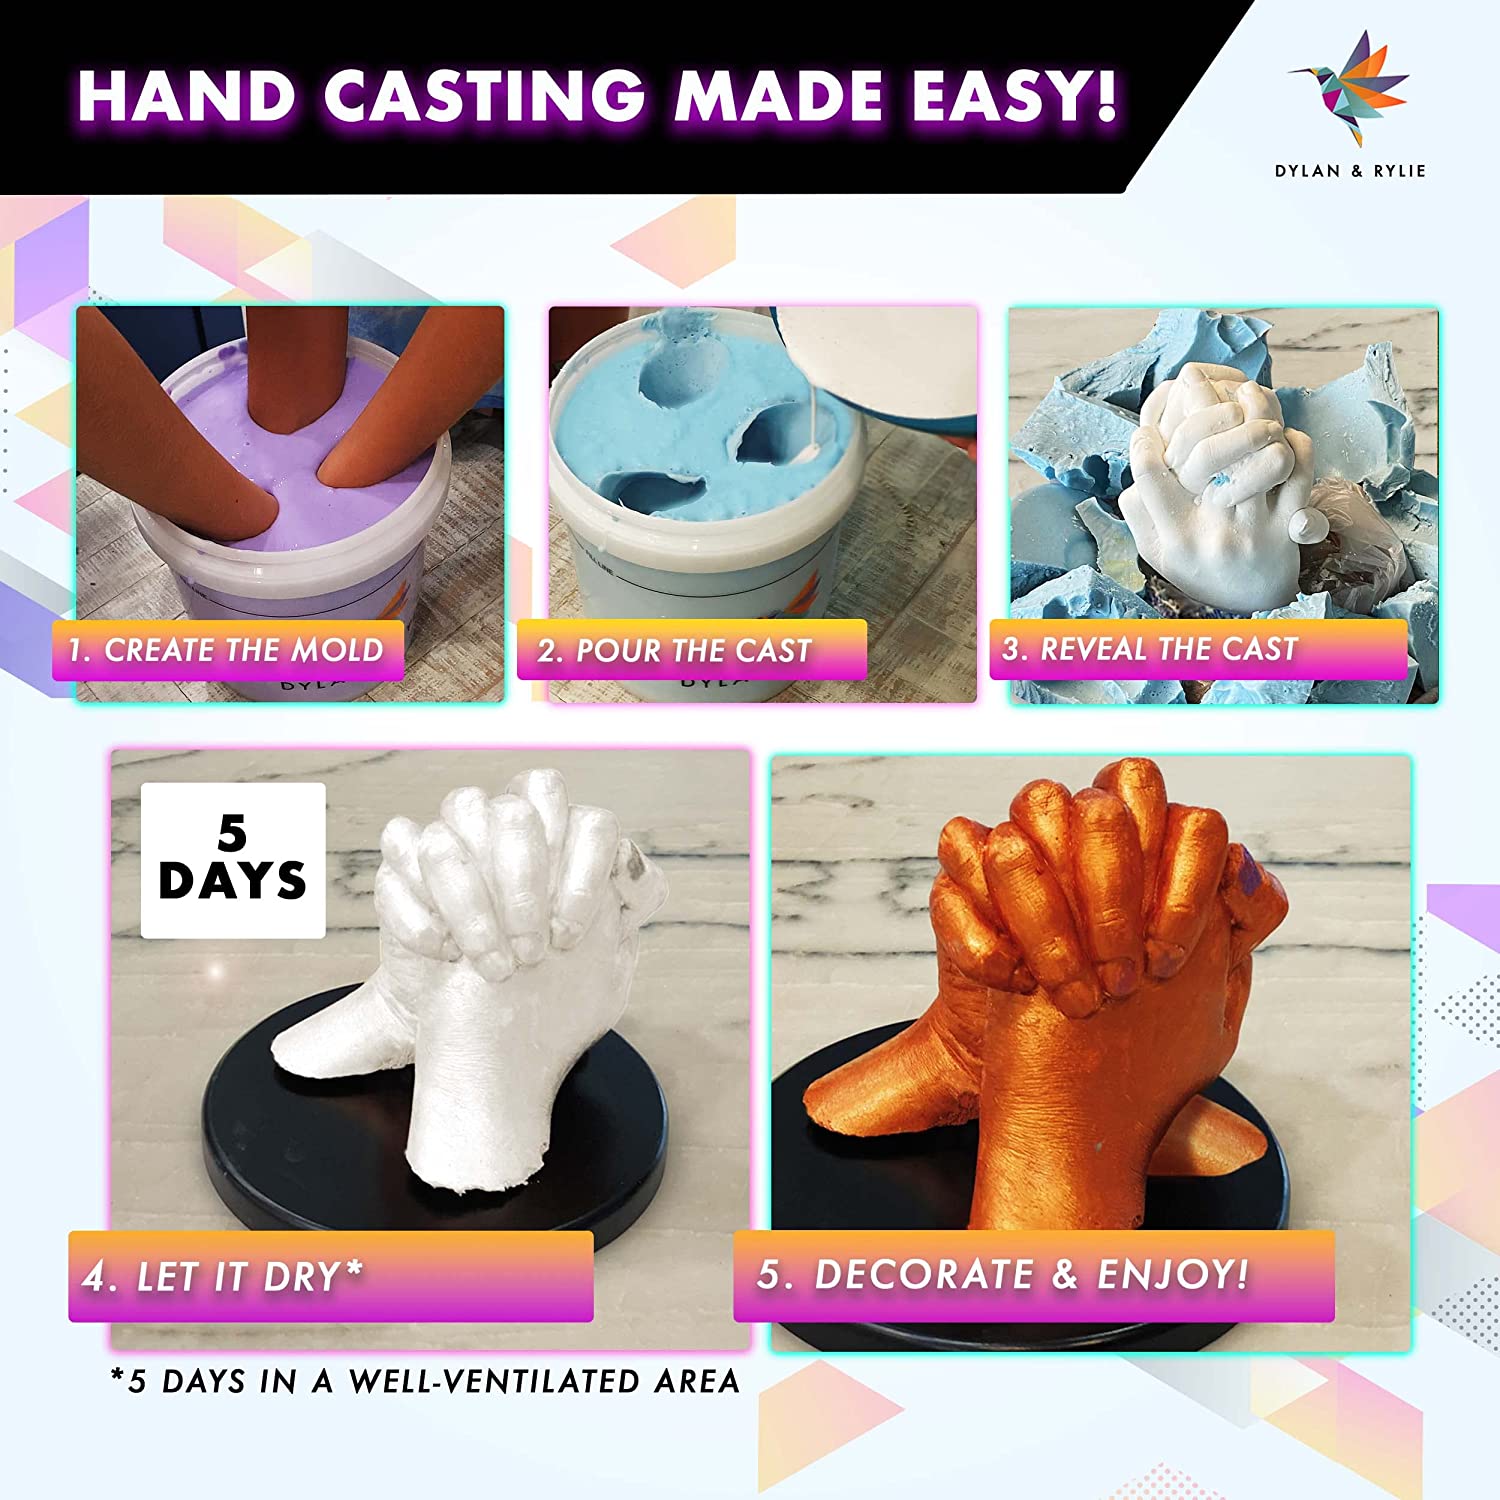 Niimo Hand Casting Kit Couples - Hand Mold Kit Couples - Plaster Hand Mold  Casting Kit with Alginate Molding Powder - Mold Making Kit - Hand Molding